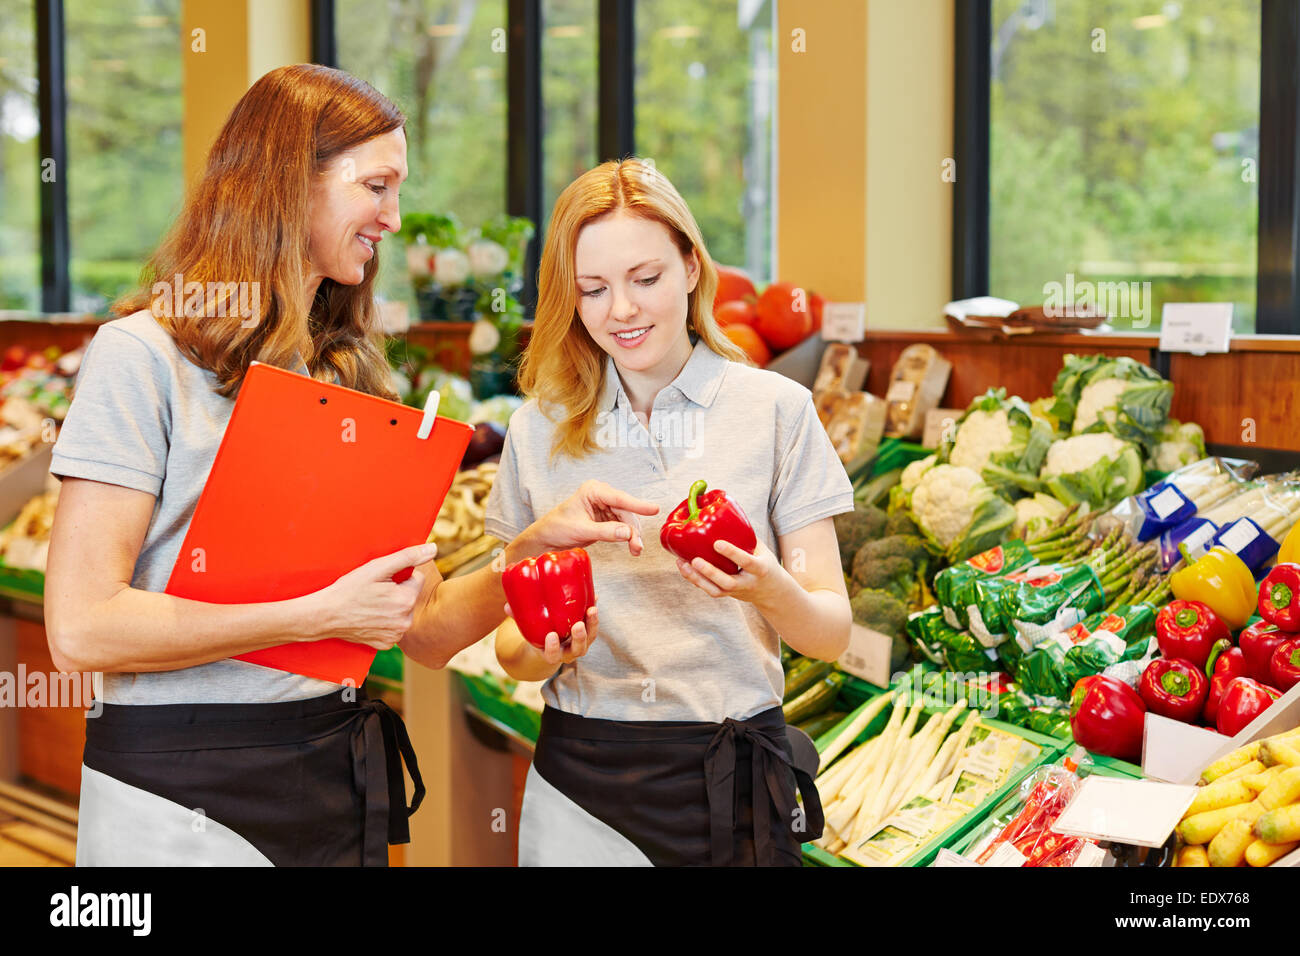 Vendeur en formation obtenez de l'aide de personnel dans un supermarché Banque D'Images